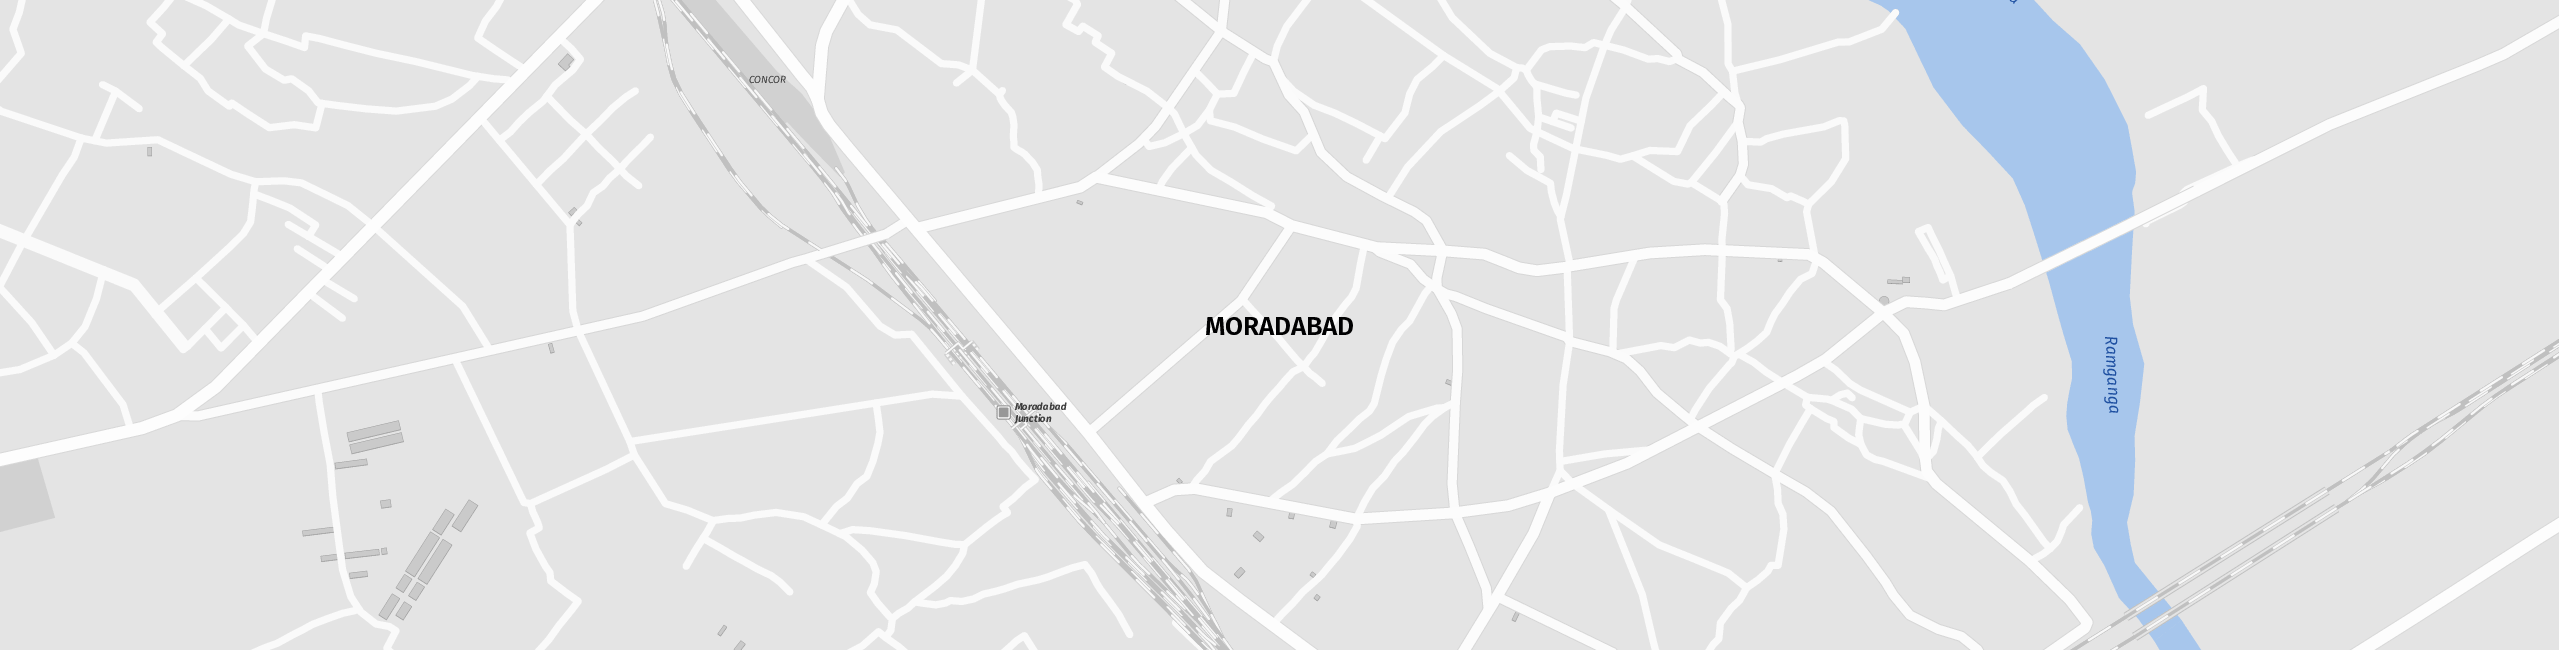 Stadtplan Moradabad zum Downloaden.